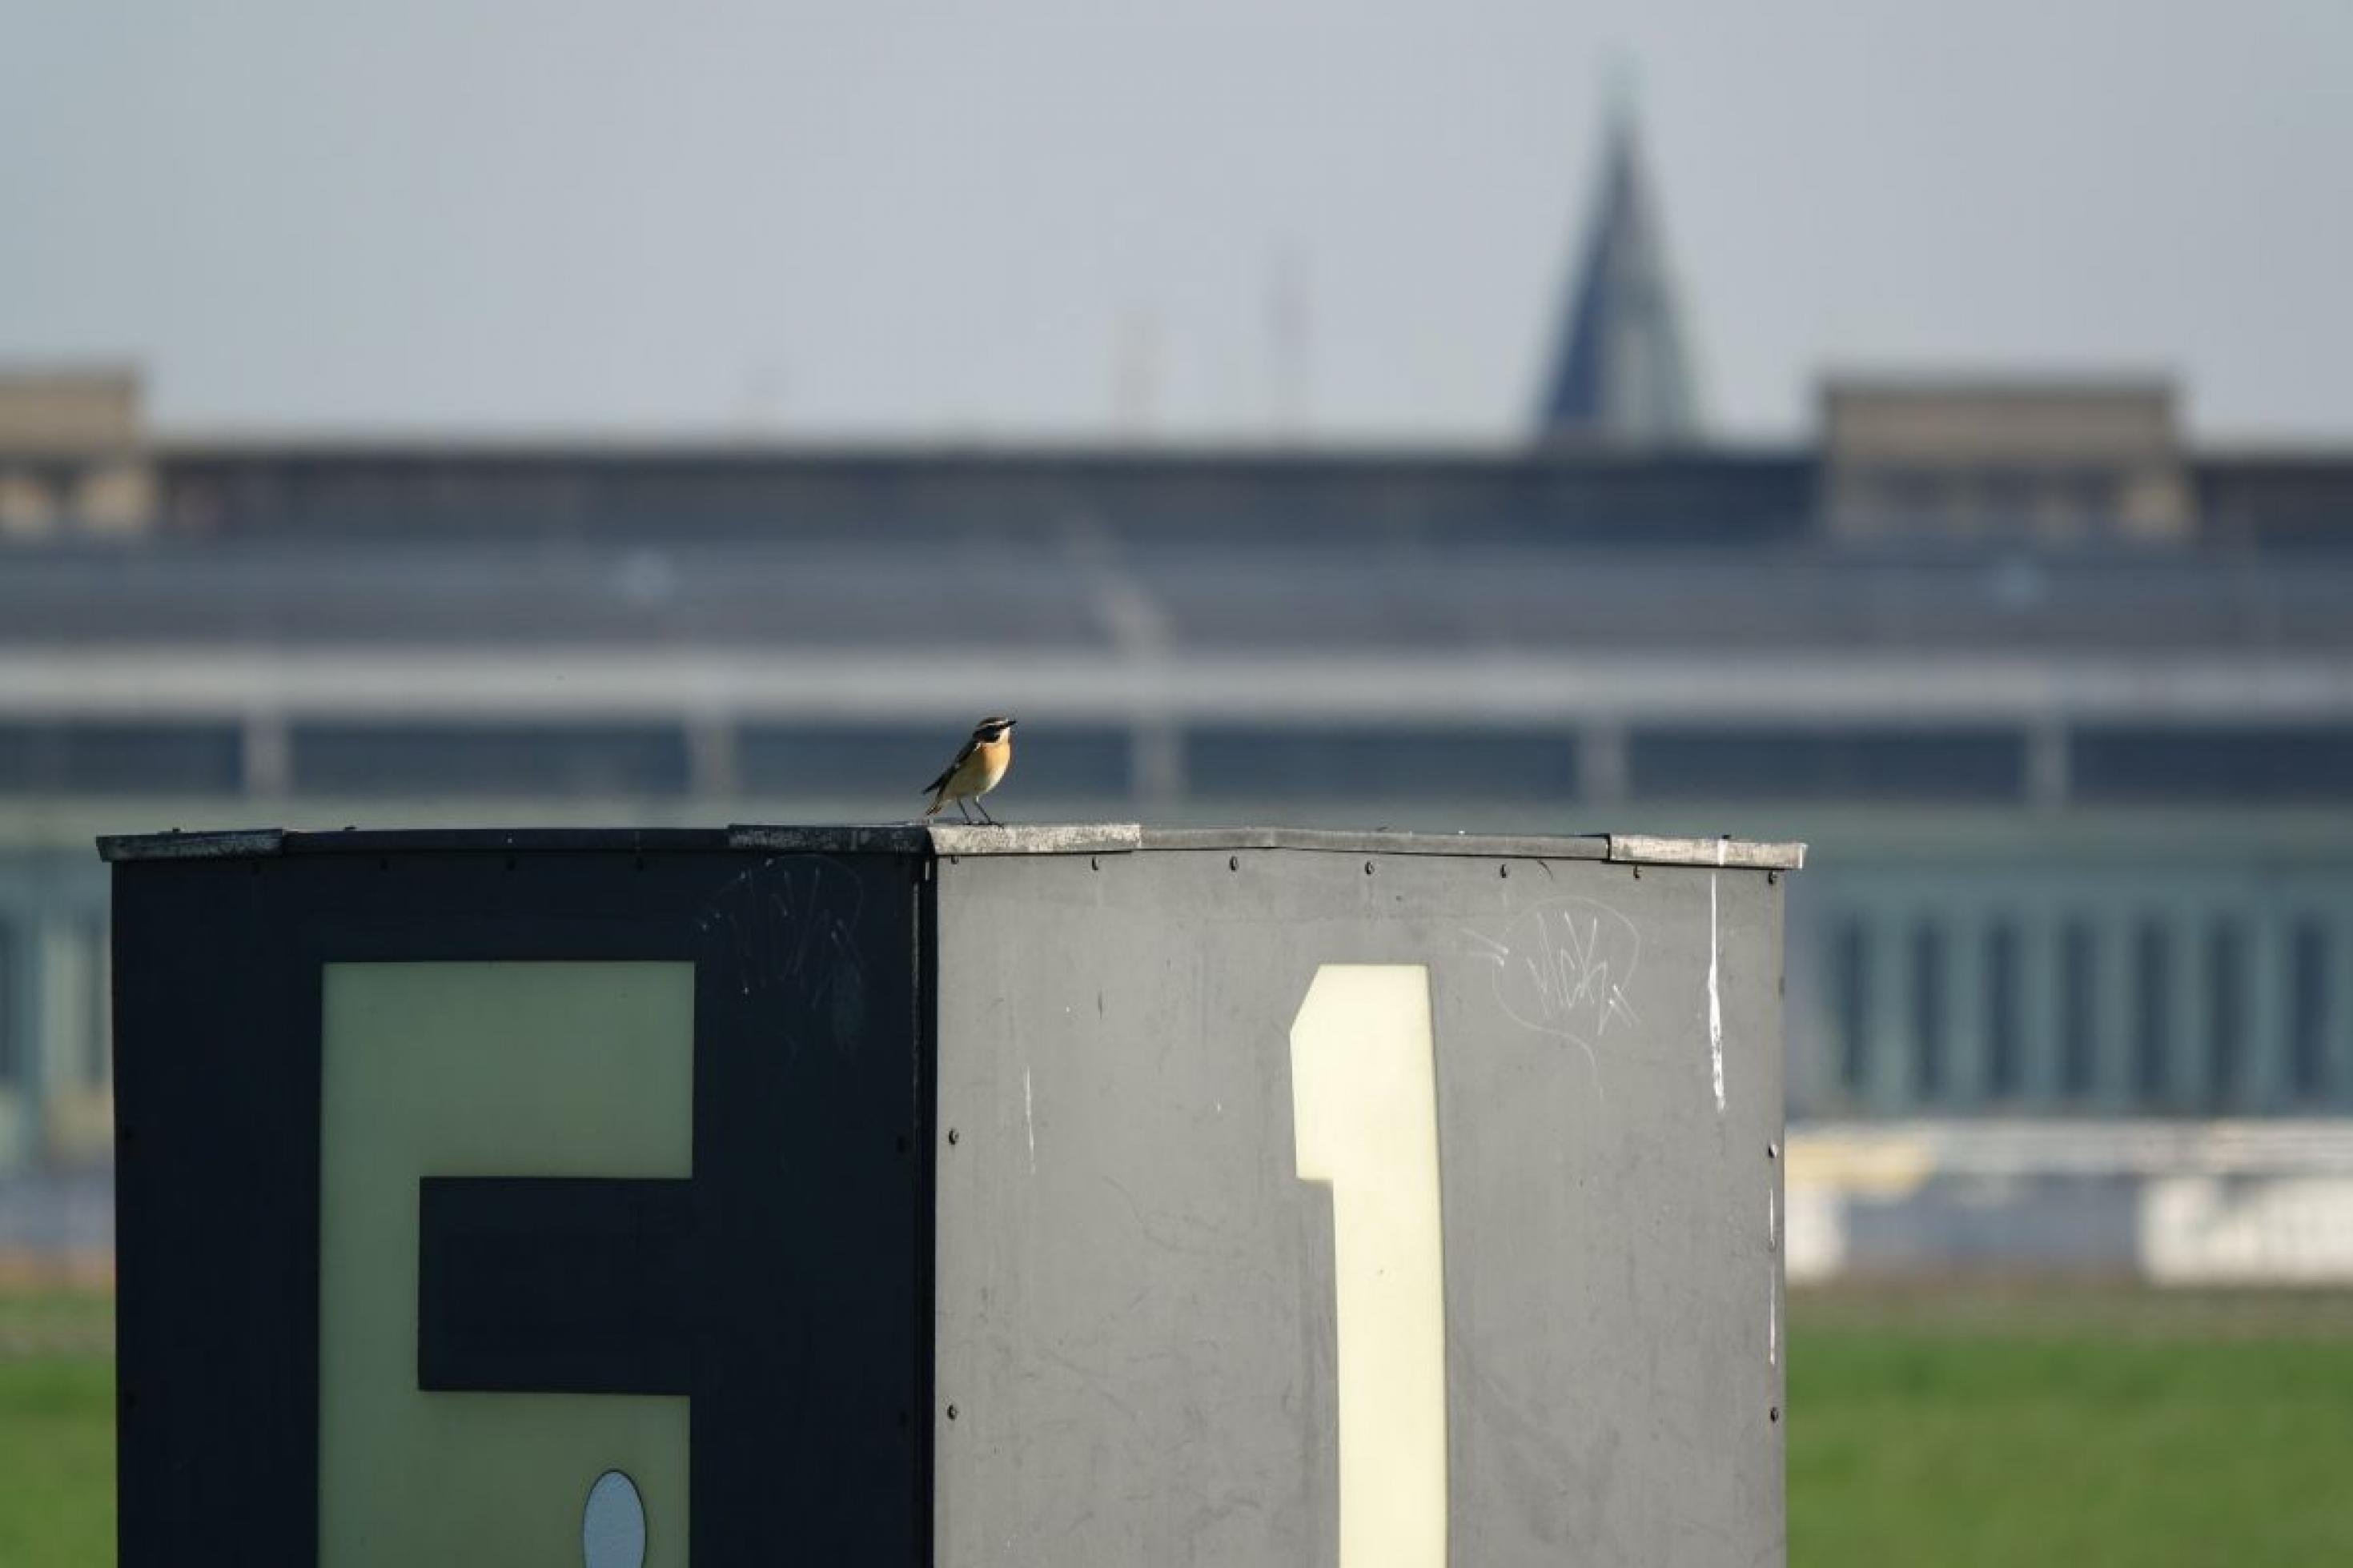 Auf dem Dach einer Baracke am Rand des Tempelhofer Felds sitzt ein Braunkehlchen. Das Tempelhofer Feld liegt mitten in Berlin und ist eines der wenigen Großstadtbiotope, in denen Vögel der offenen Landschaft vorkommen